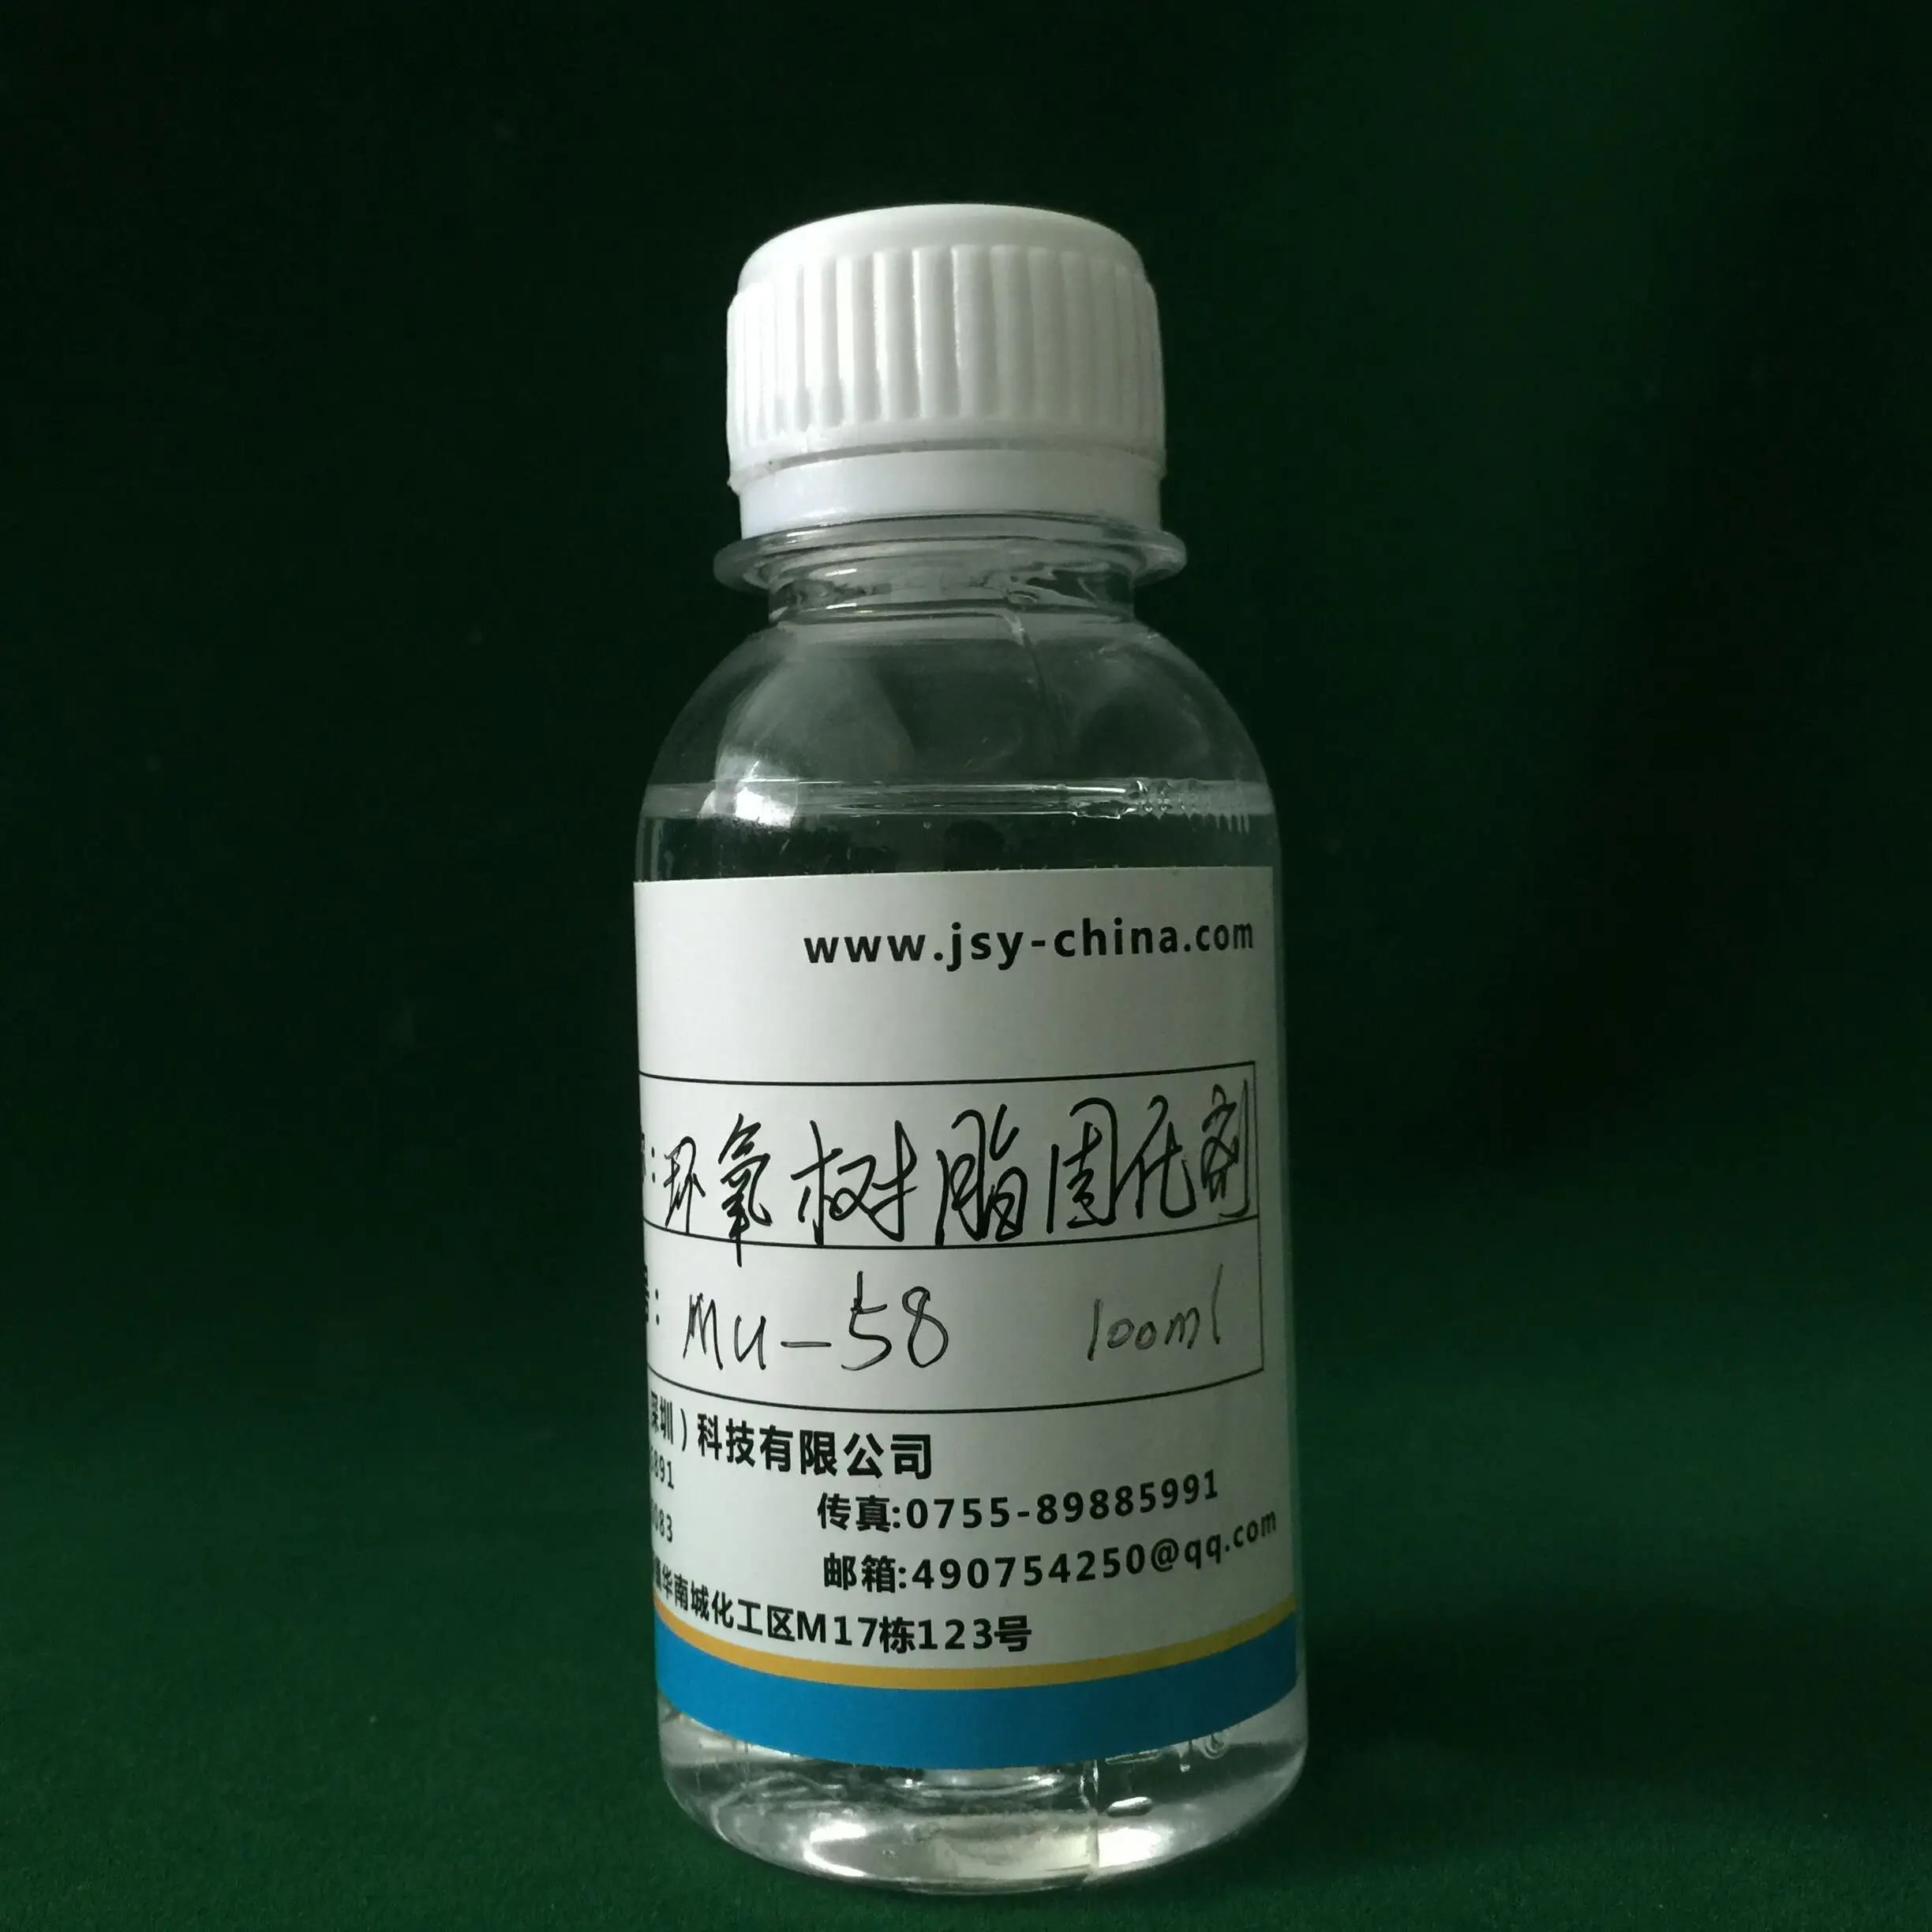 電子エポキシ樹脂硬化剤化学補助剤MU-58